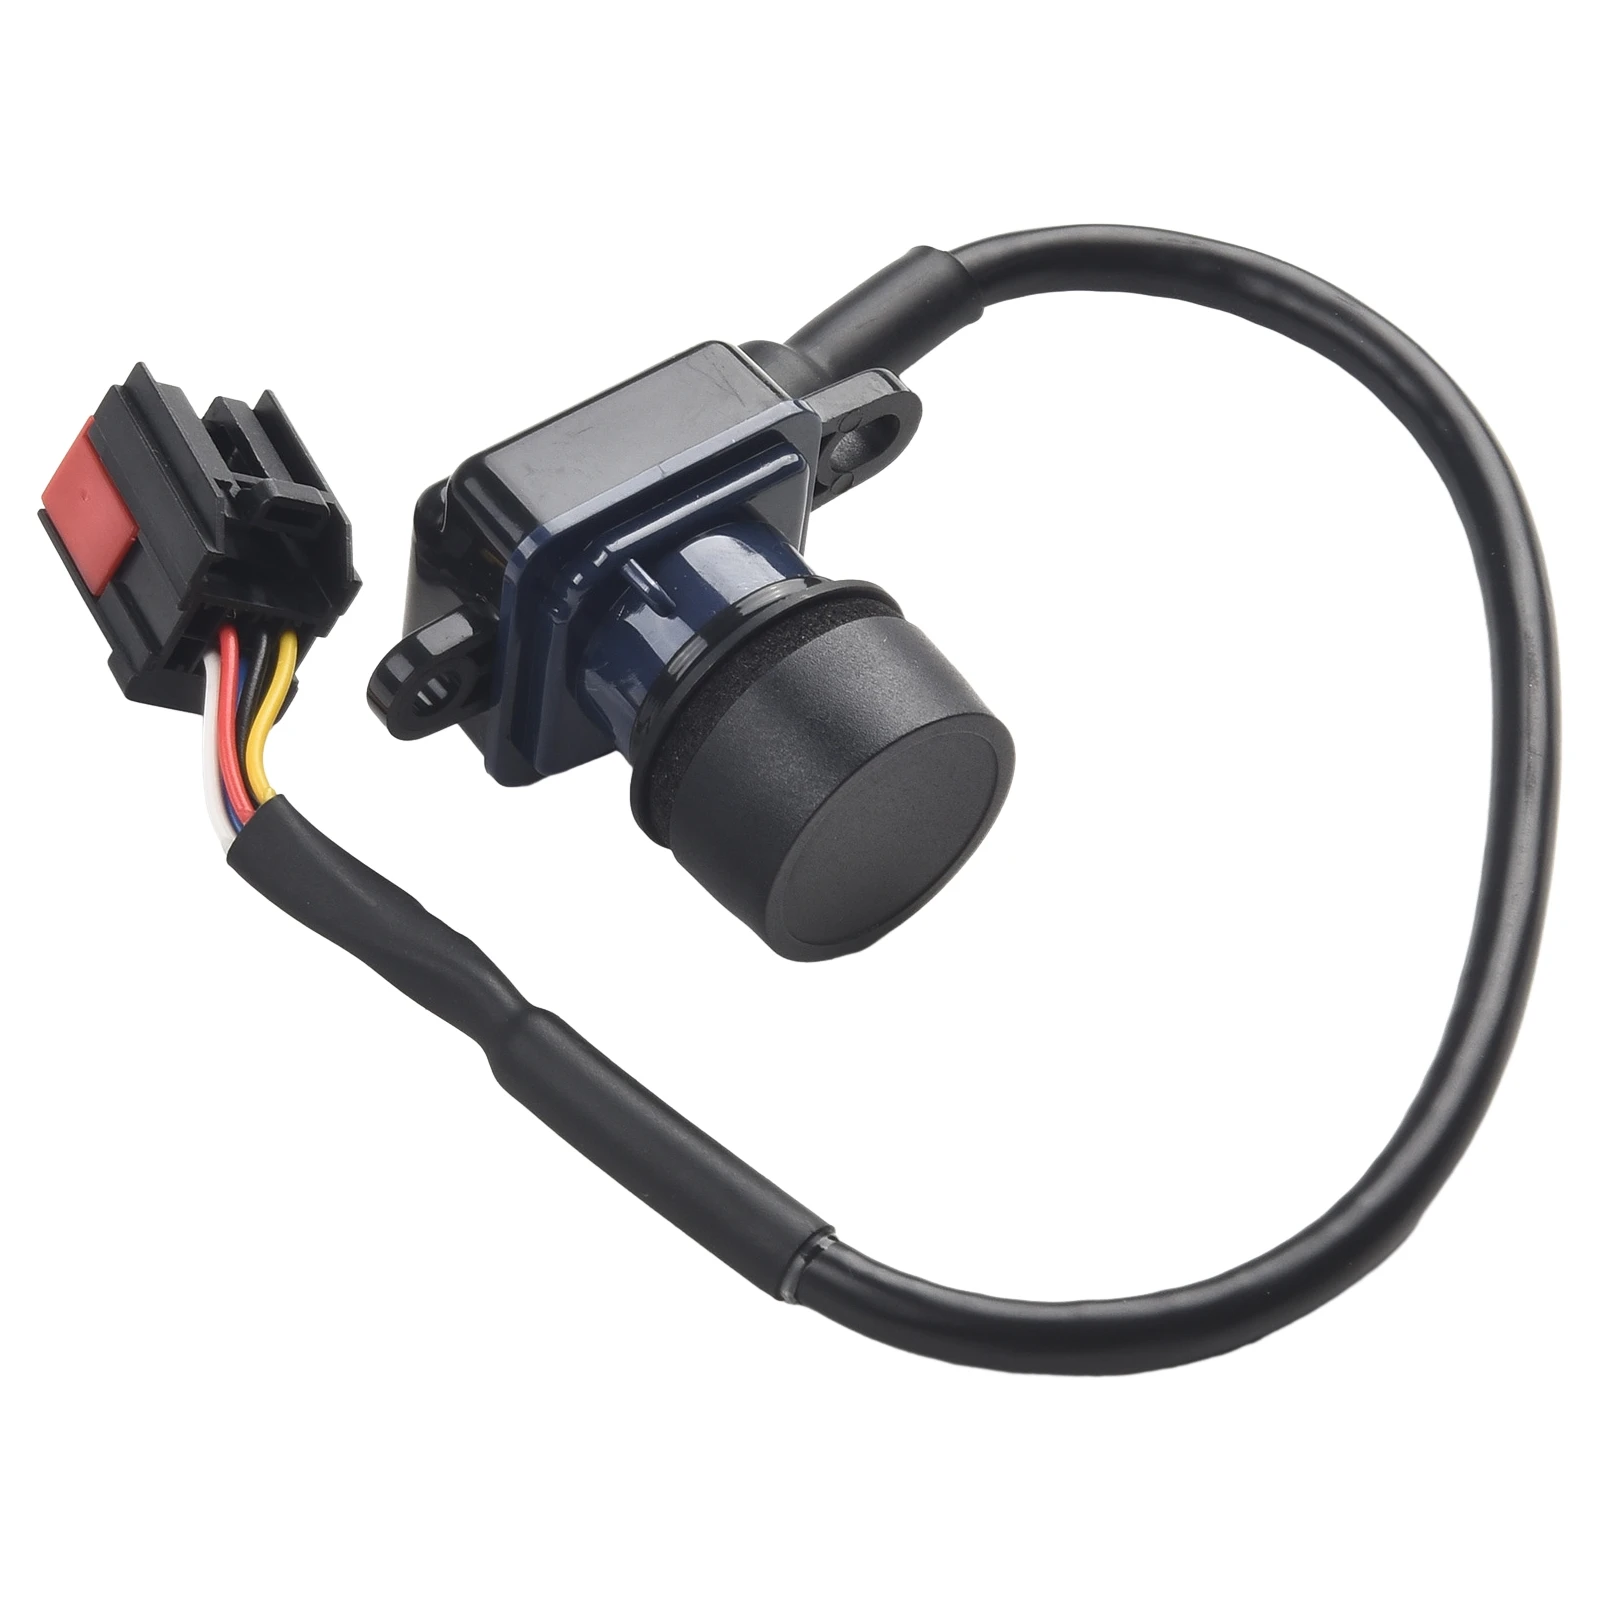 De Vânzare la cald Masina Negru Backup Camera retrovizoare Camera de Rezervă Pentru Chrysler 300 2011-2014 Pentru Încărcător 11-14 56054058AH